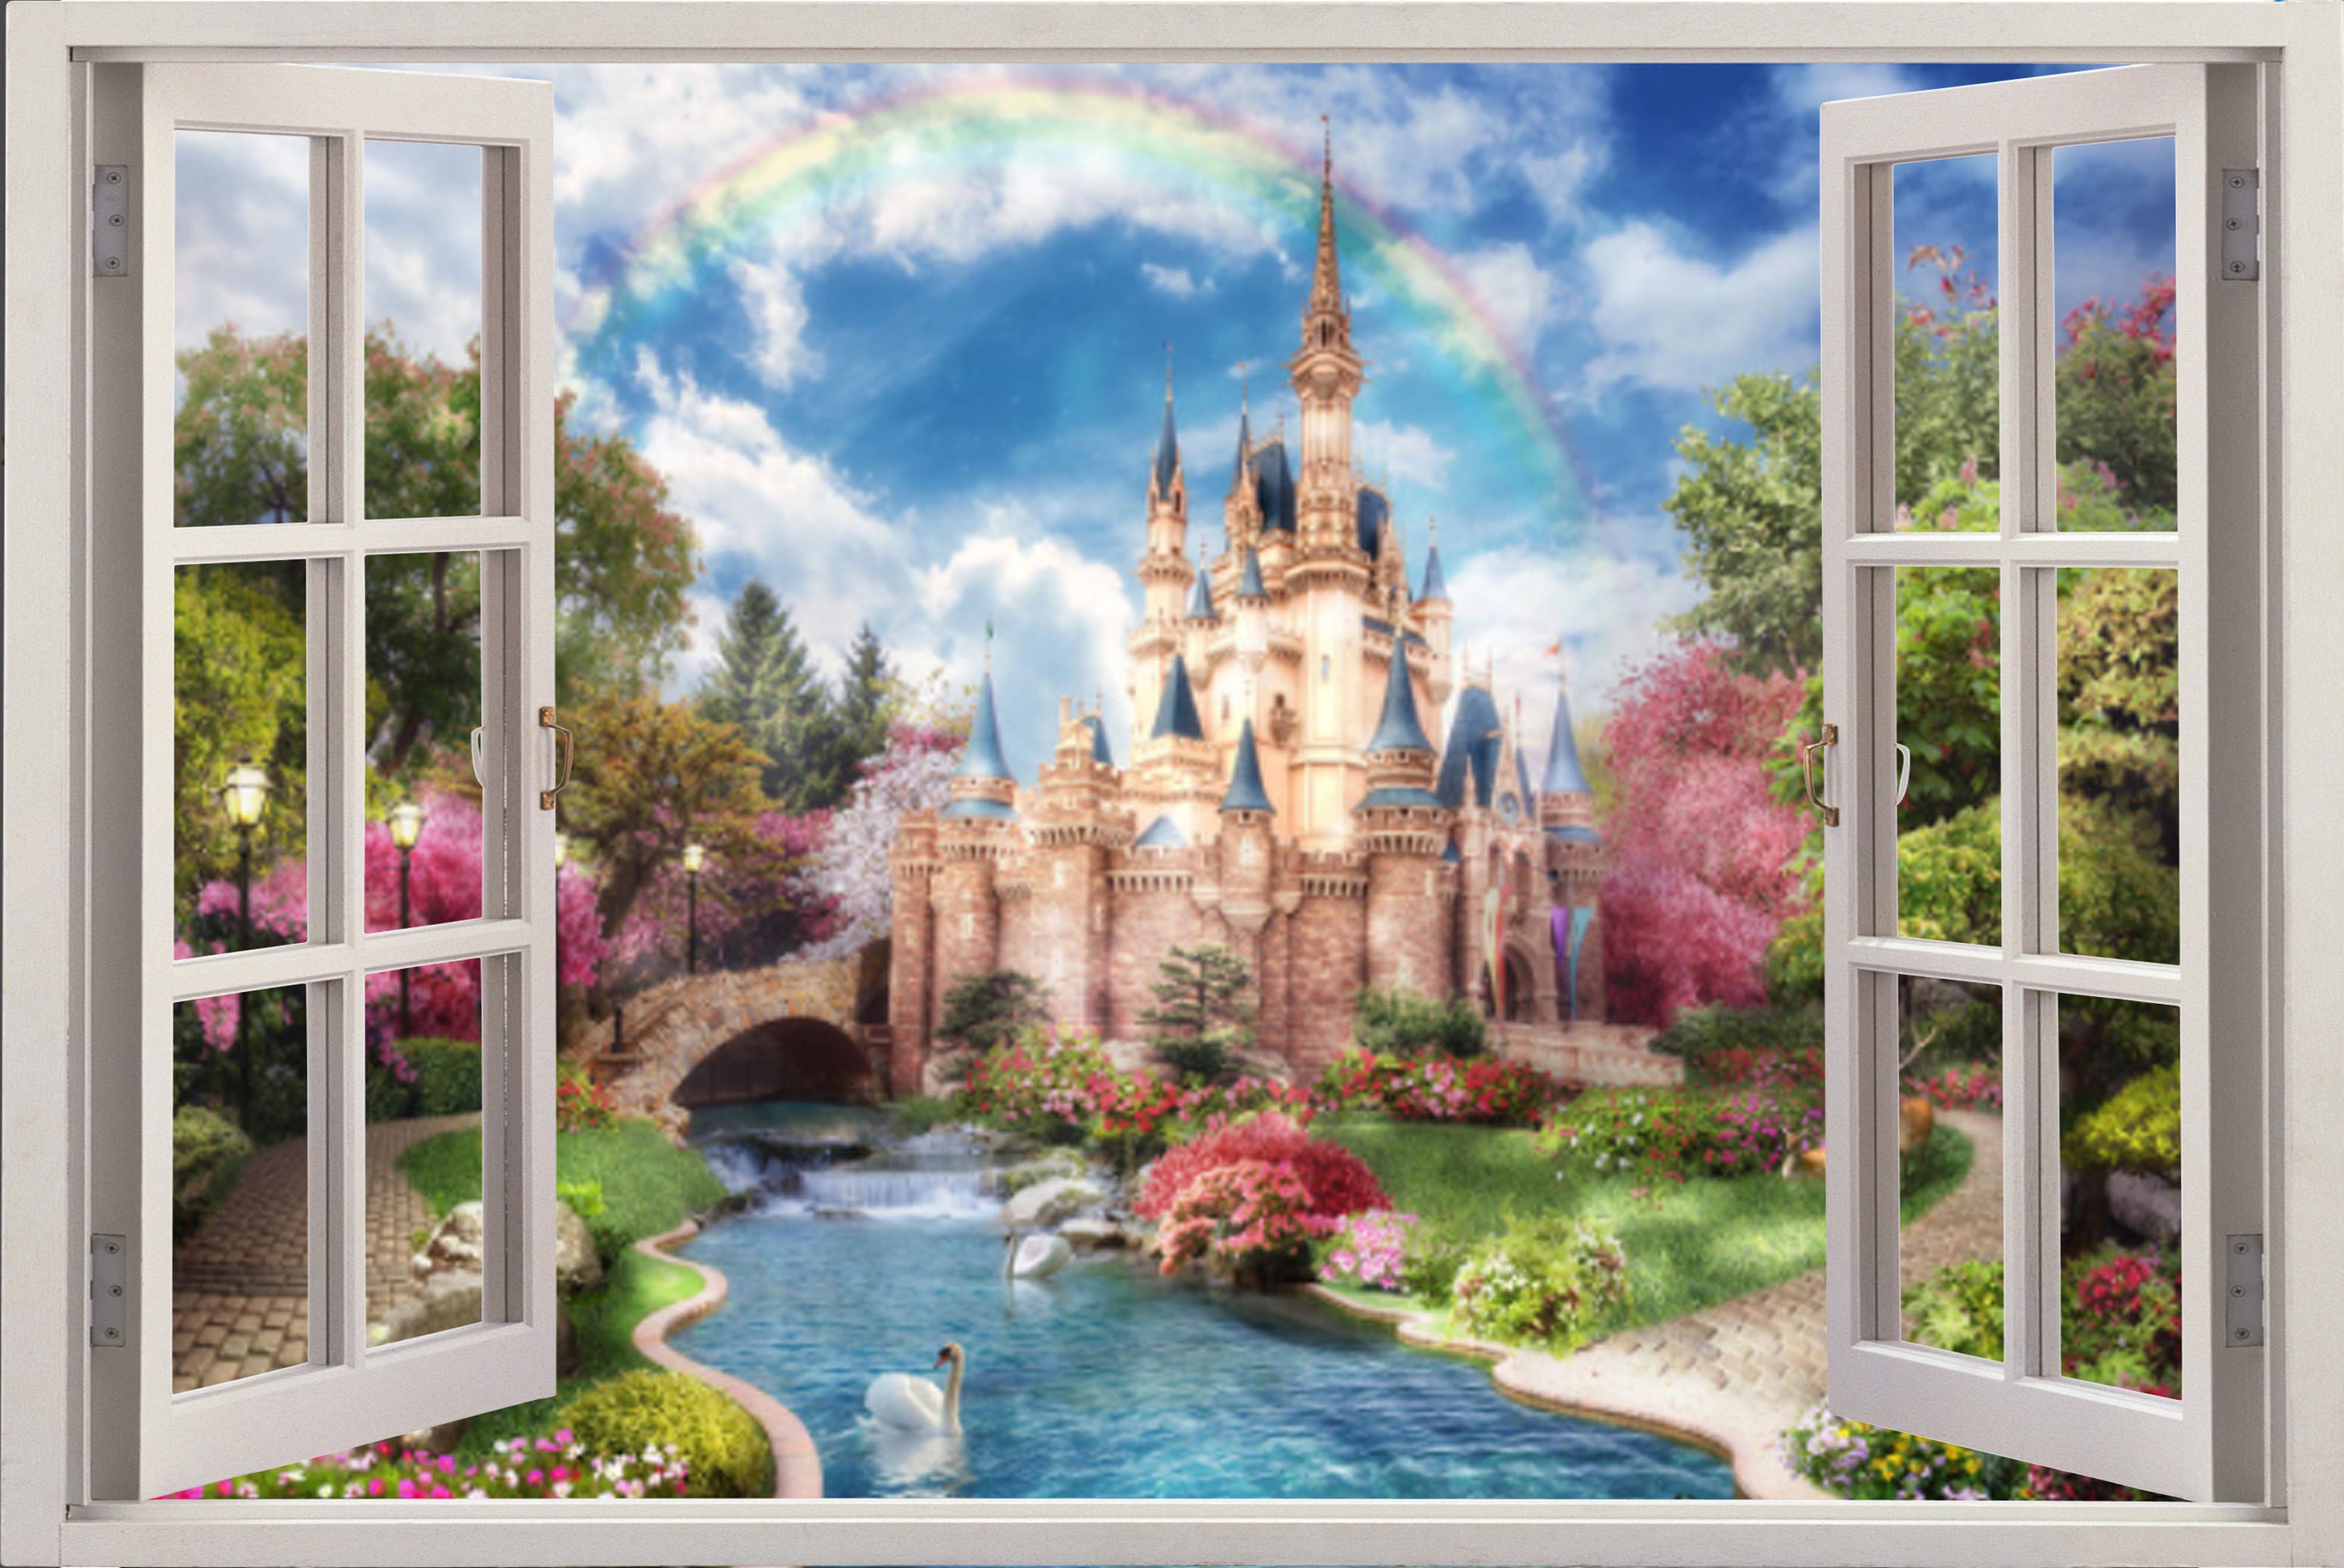 Princess Castle Window Kids Wallpaper Room Sticker Wall | Etsy